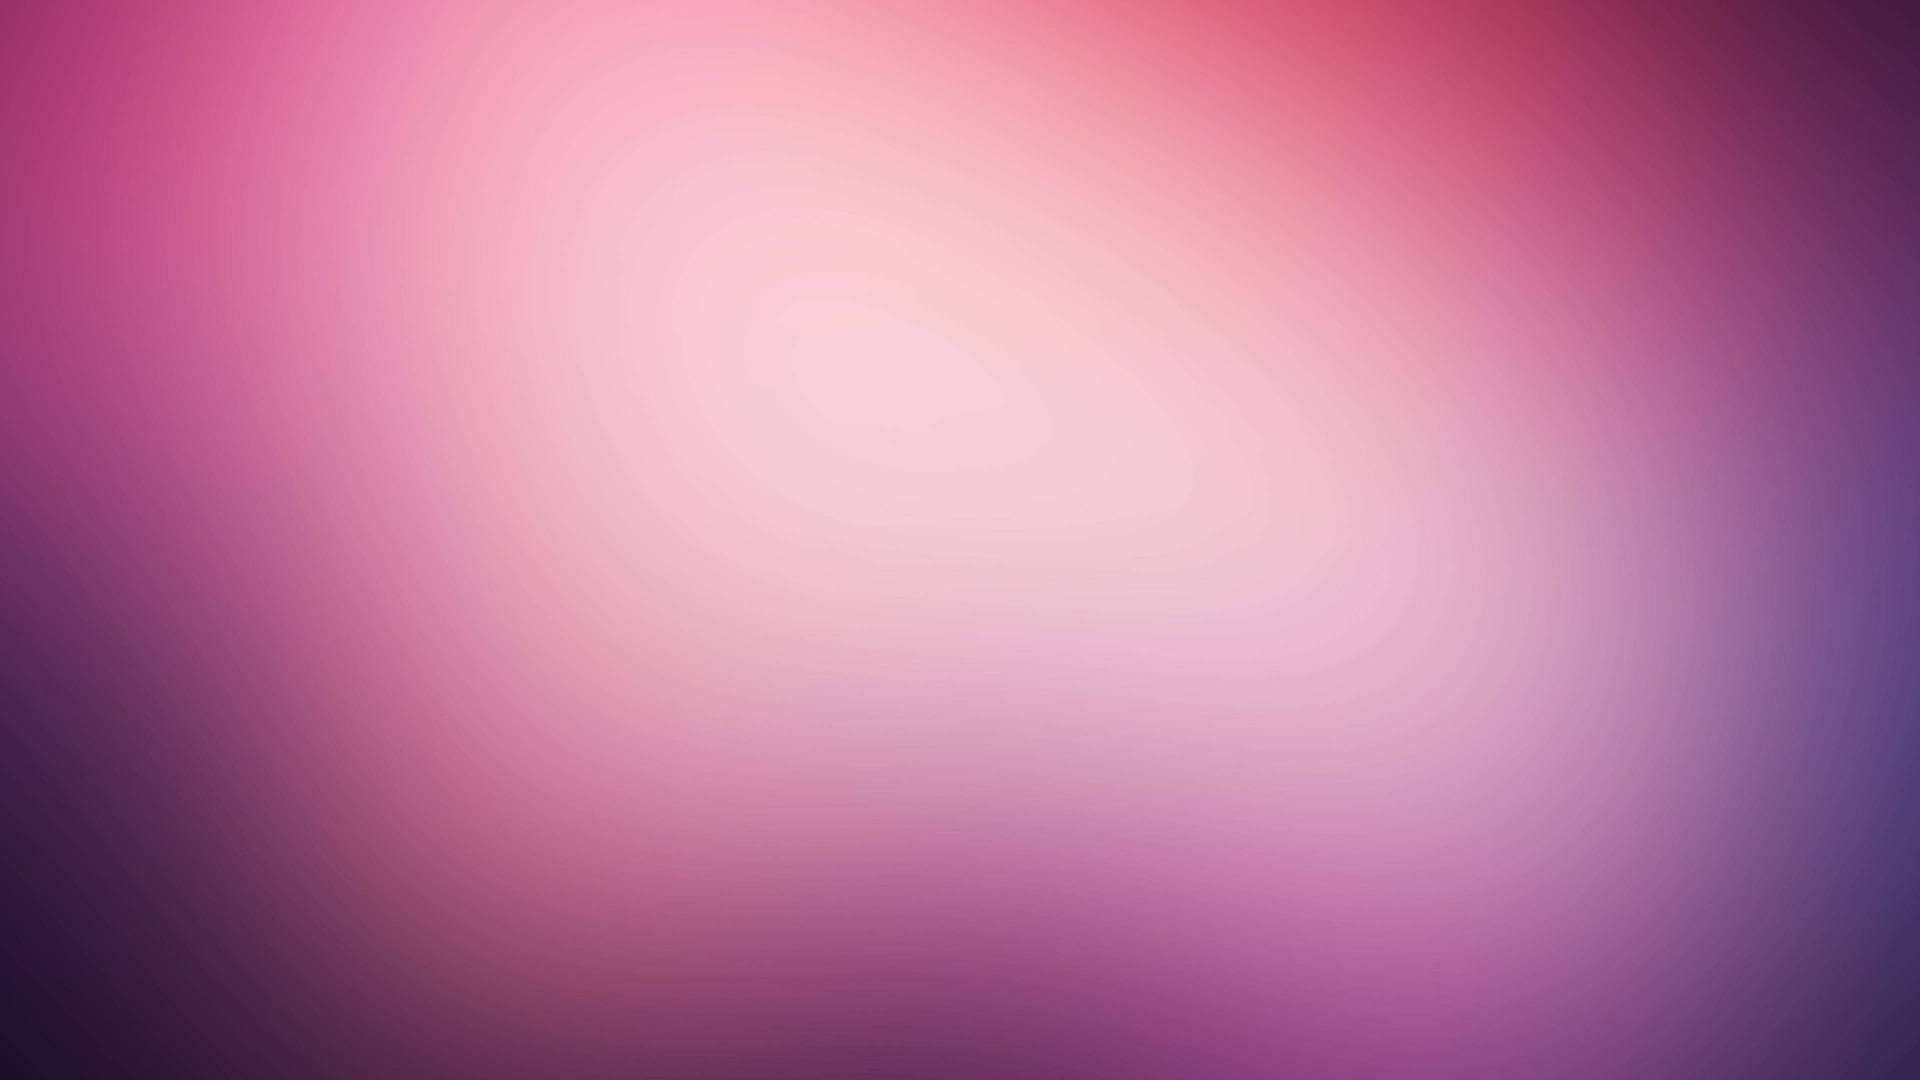 Umlindo Display De Confete Rosa E Branco. Papel de Parede